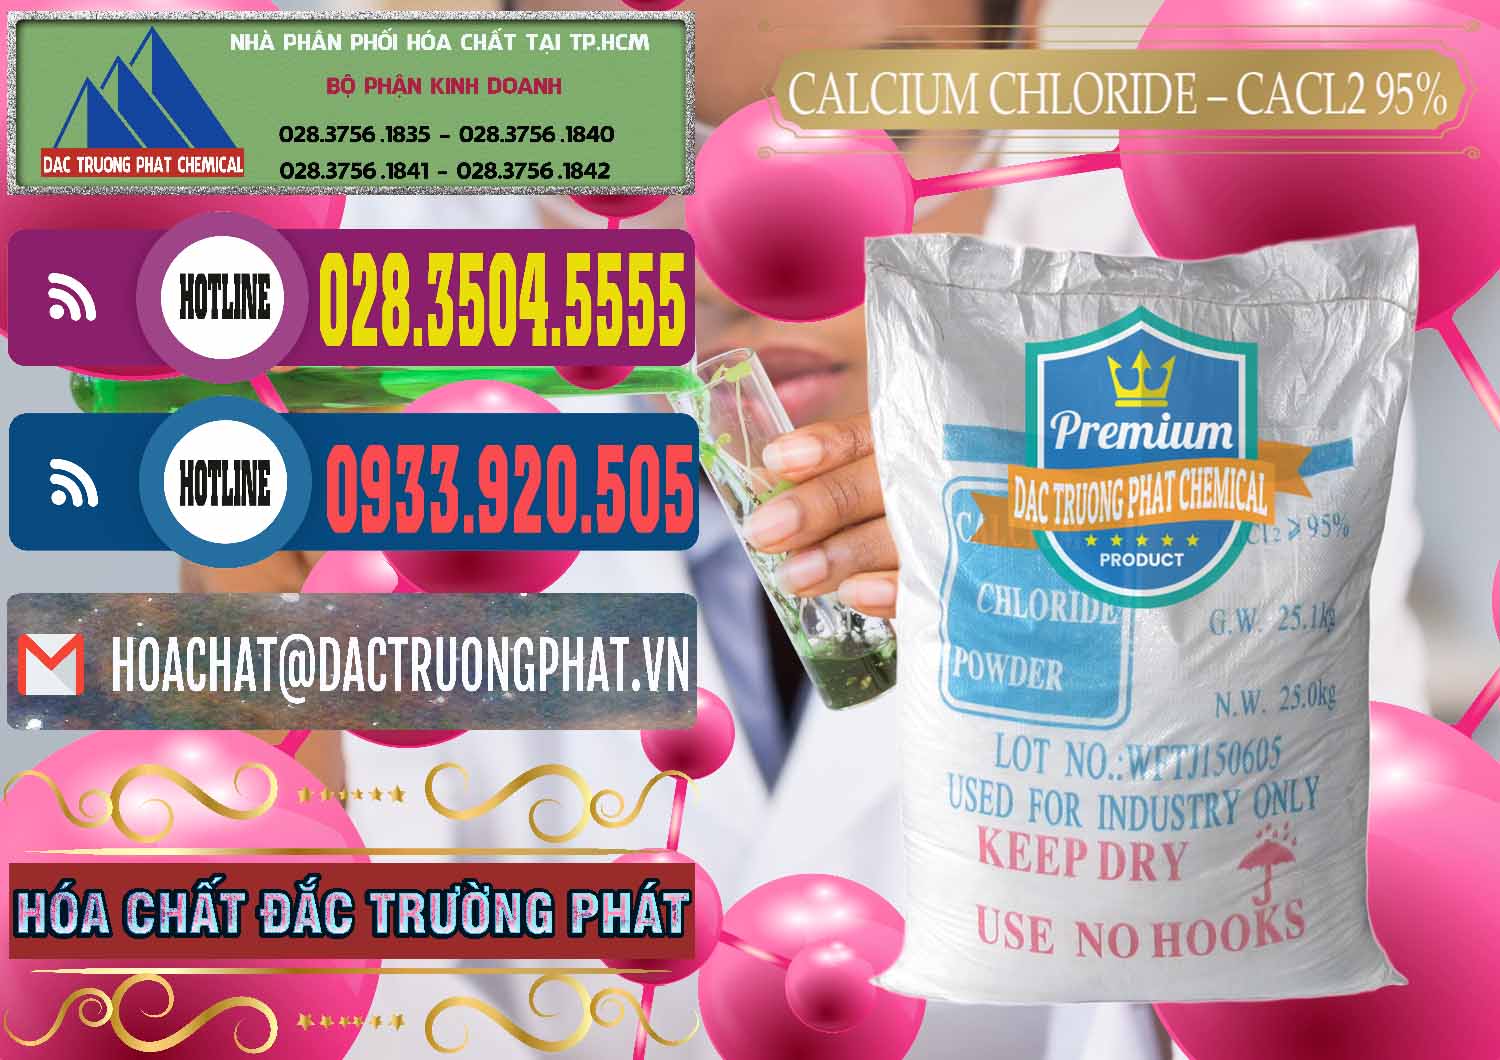 Công ty chuyên cung cấp & bán CaCl2 – Canxi Clorua 95% Trung Quốc China - 0039 - Kinh doanh & phân phối hóa chất tại TP.HCM - muabanhoachat.com.vn